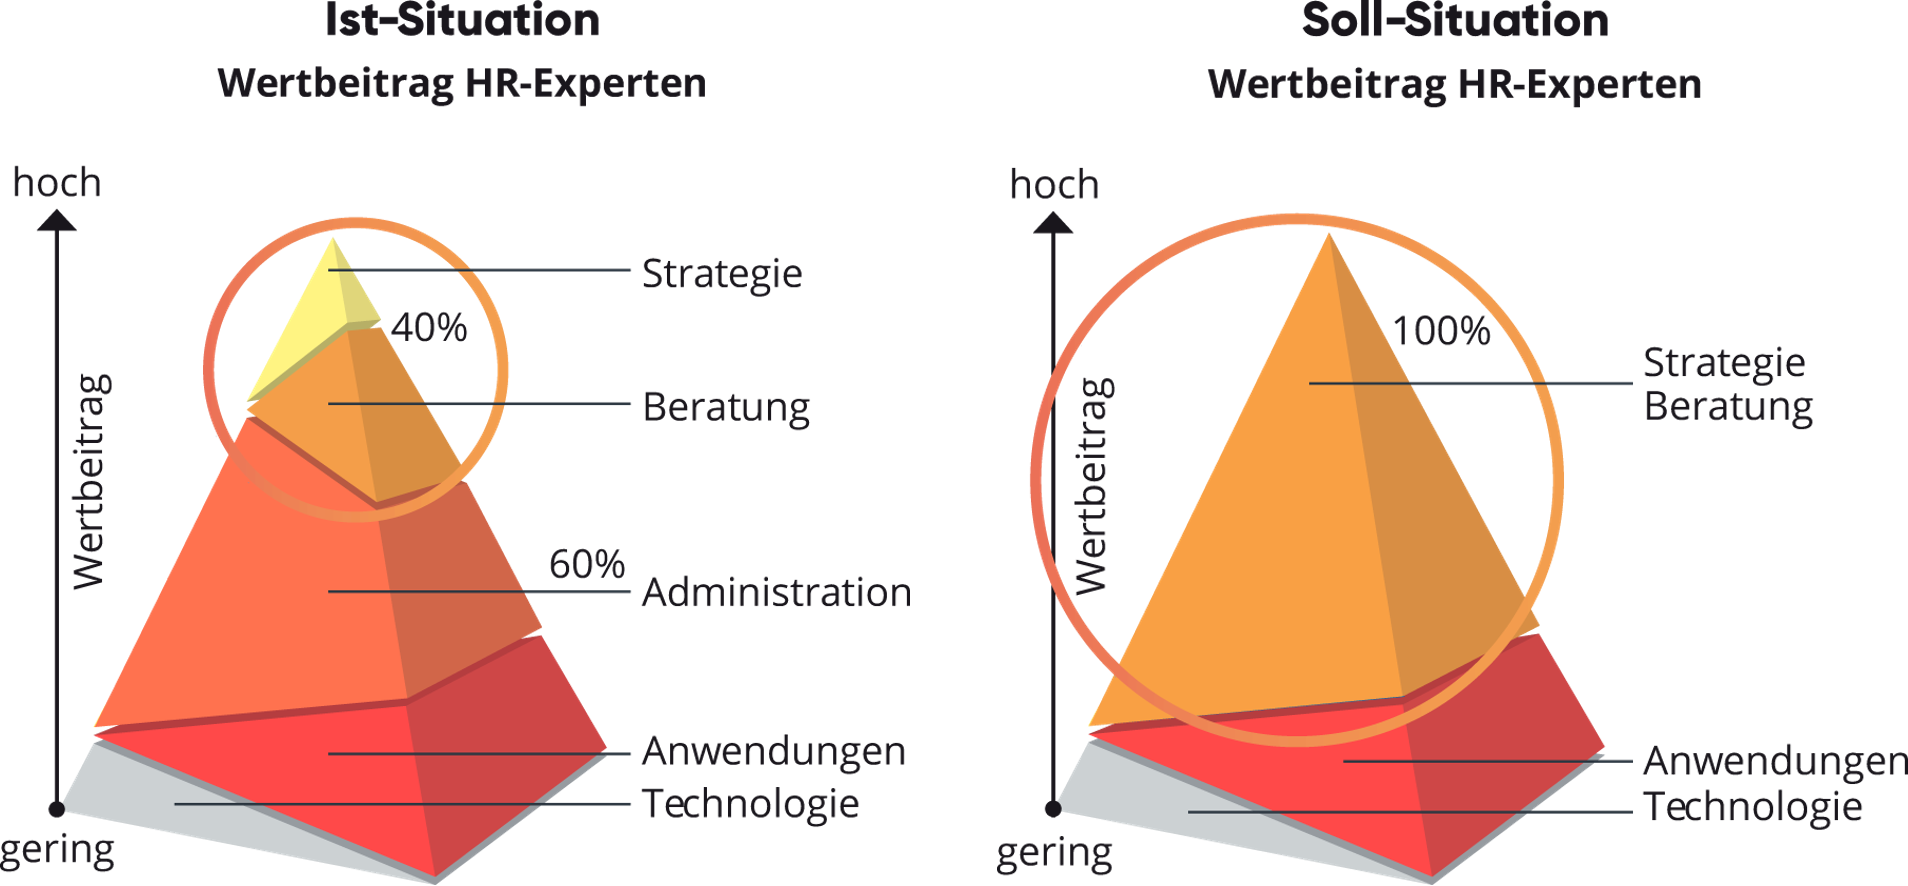 Grafik mit Pyramiden zum Thema Wertbeitrag HR Experten, valantic HCM Inside